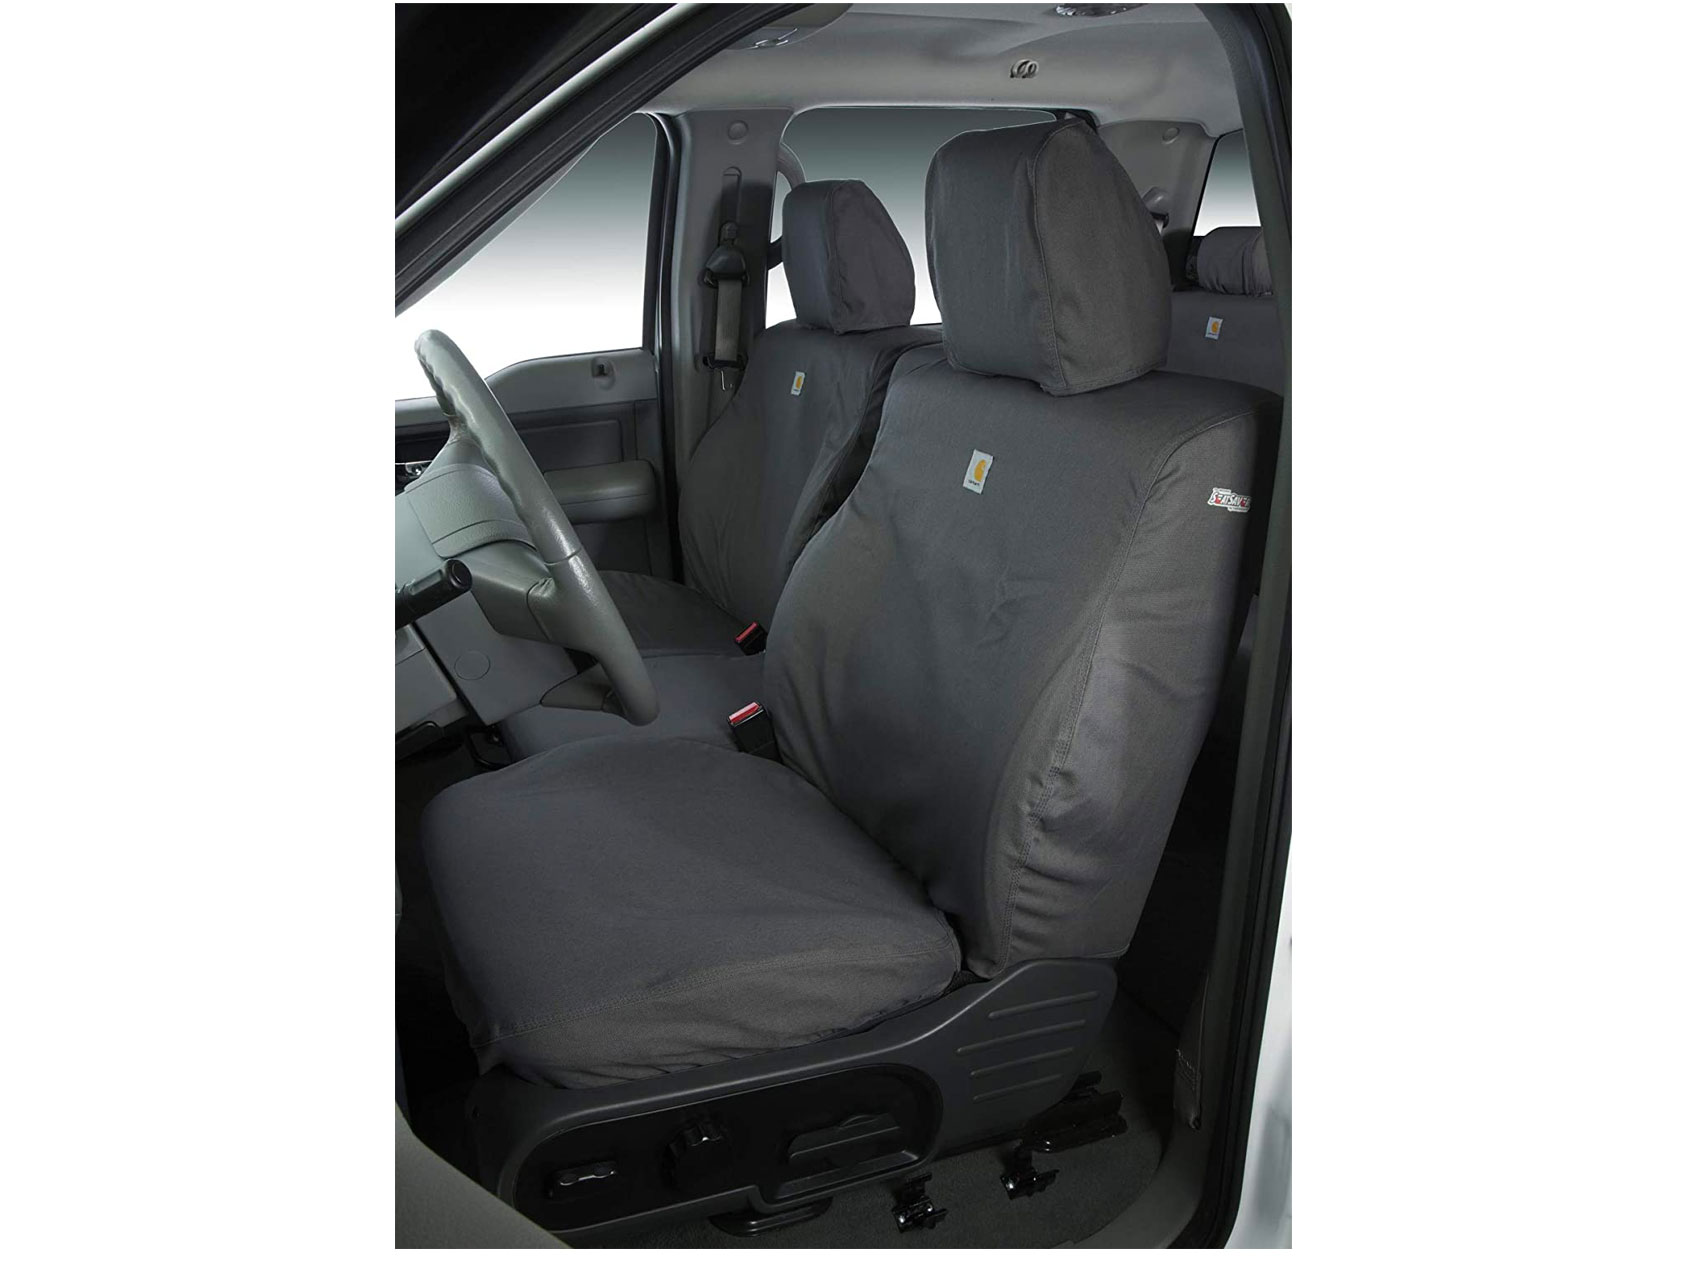 Carhartt SeatSaver Custom Seat Covers